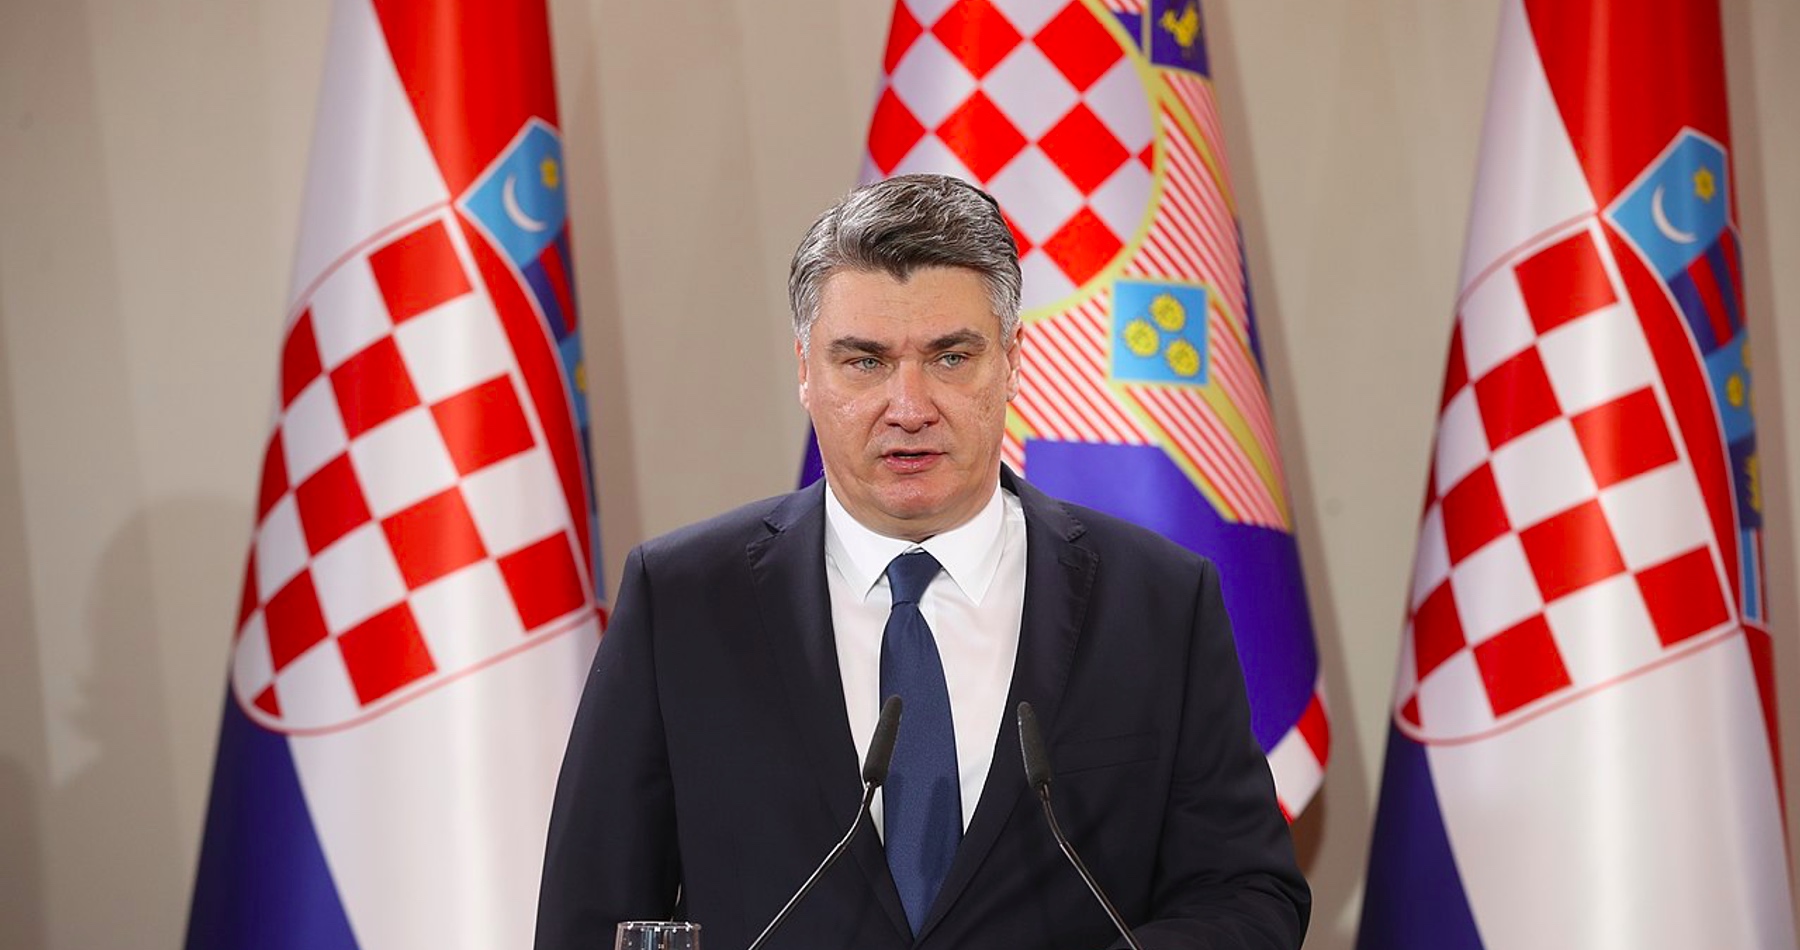 Chorvátsko stiahne svojich vojakov zo síl NATO vo východnej Európe v prípade konfliktu medzi Ruskom a Ukrajinou, oznámil chorvátsky prezident. Ukrajina podľa neho nemá čo hľadať v NATO a označil ju za jednu z najzkorumpovanejších krajín, v ktorej došlo k prevratu